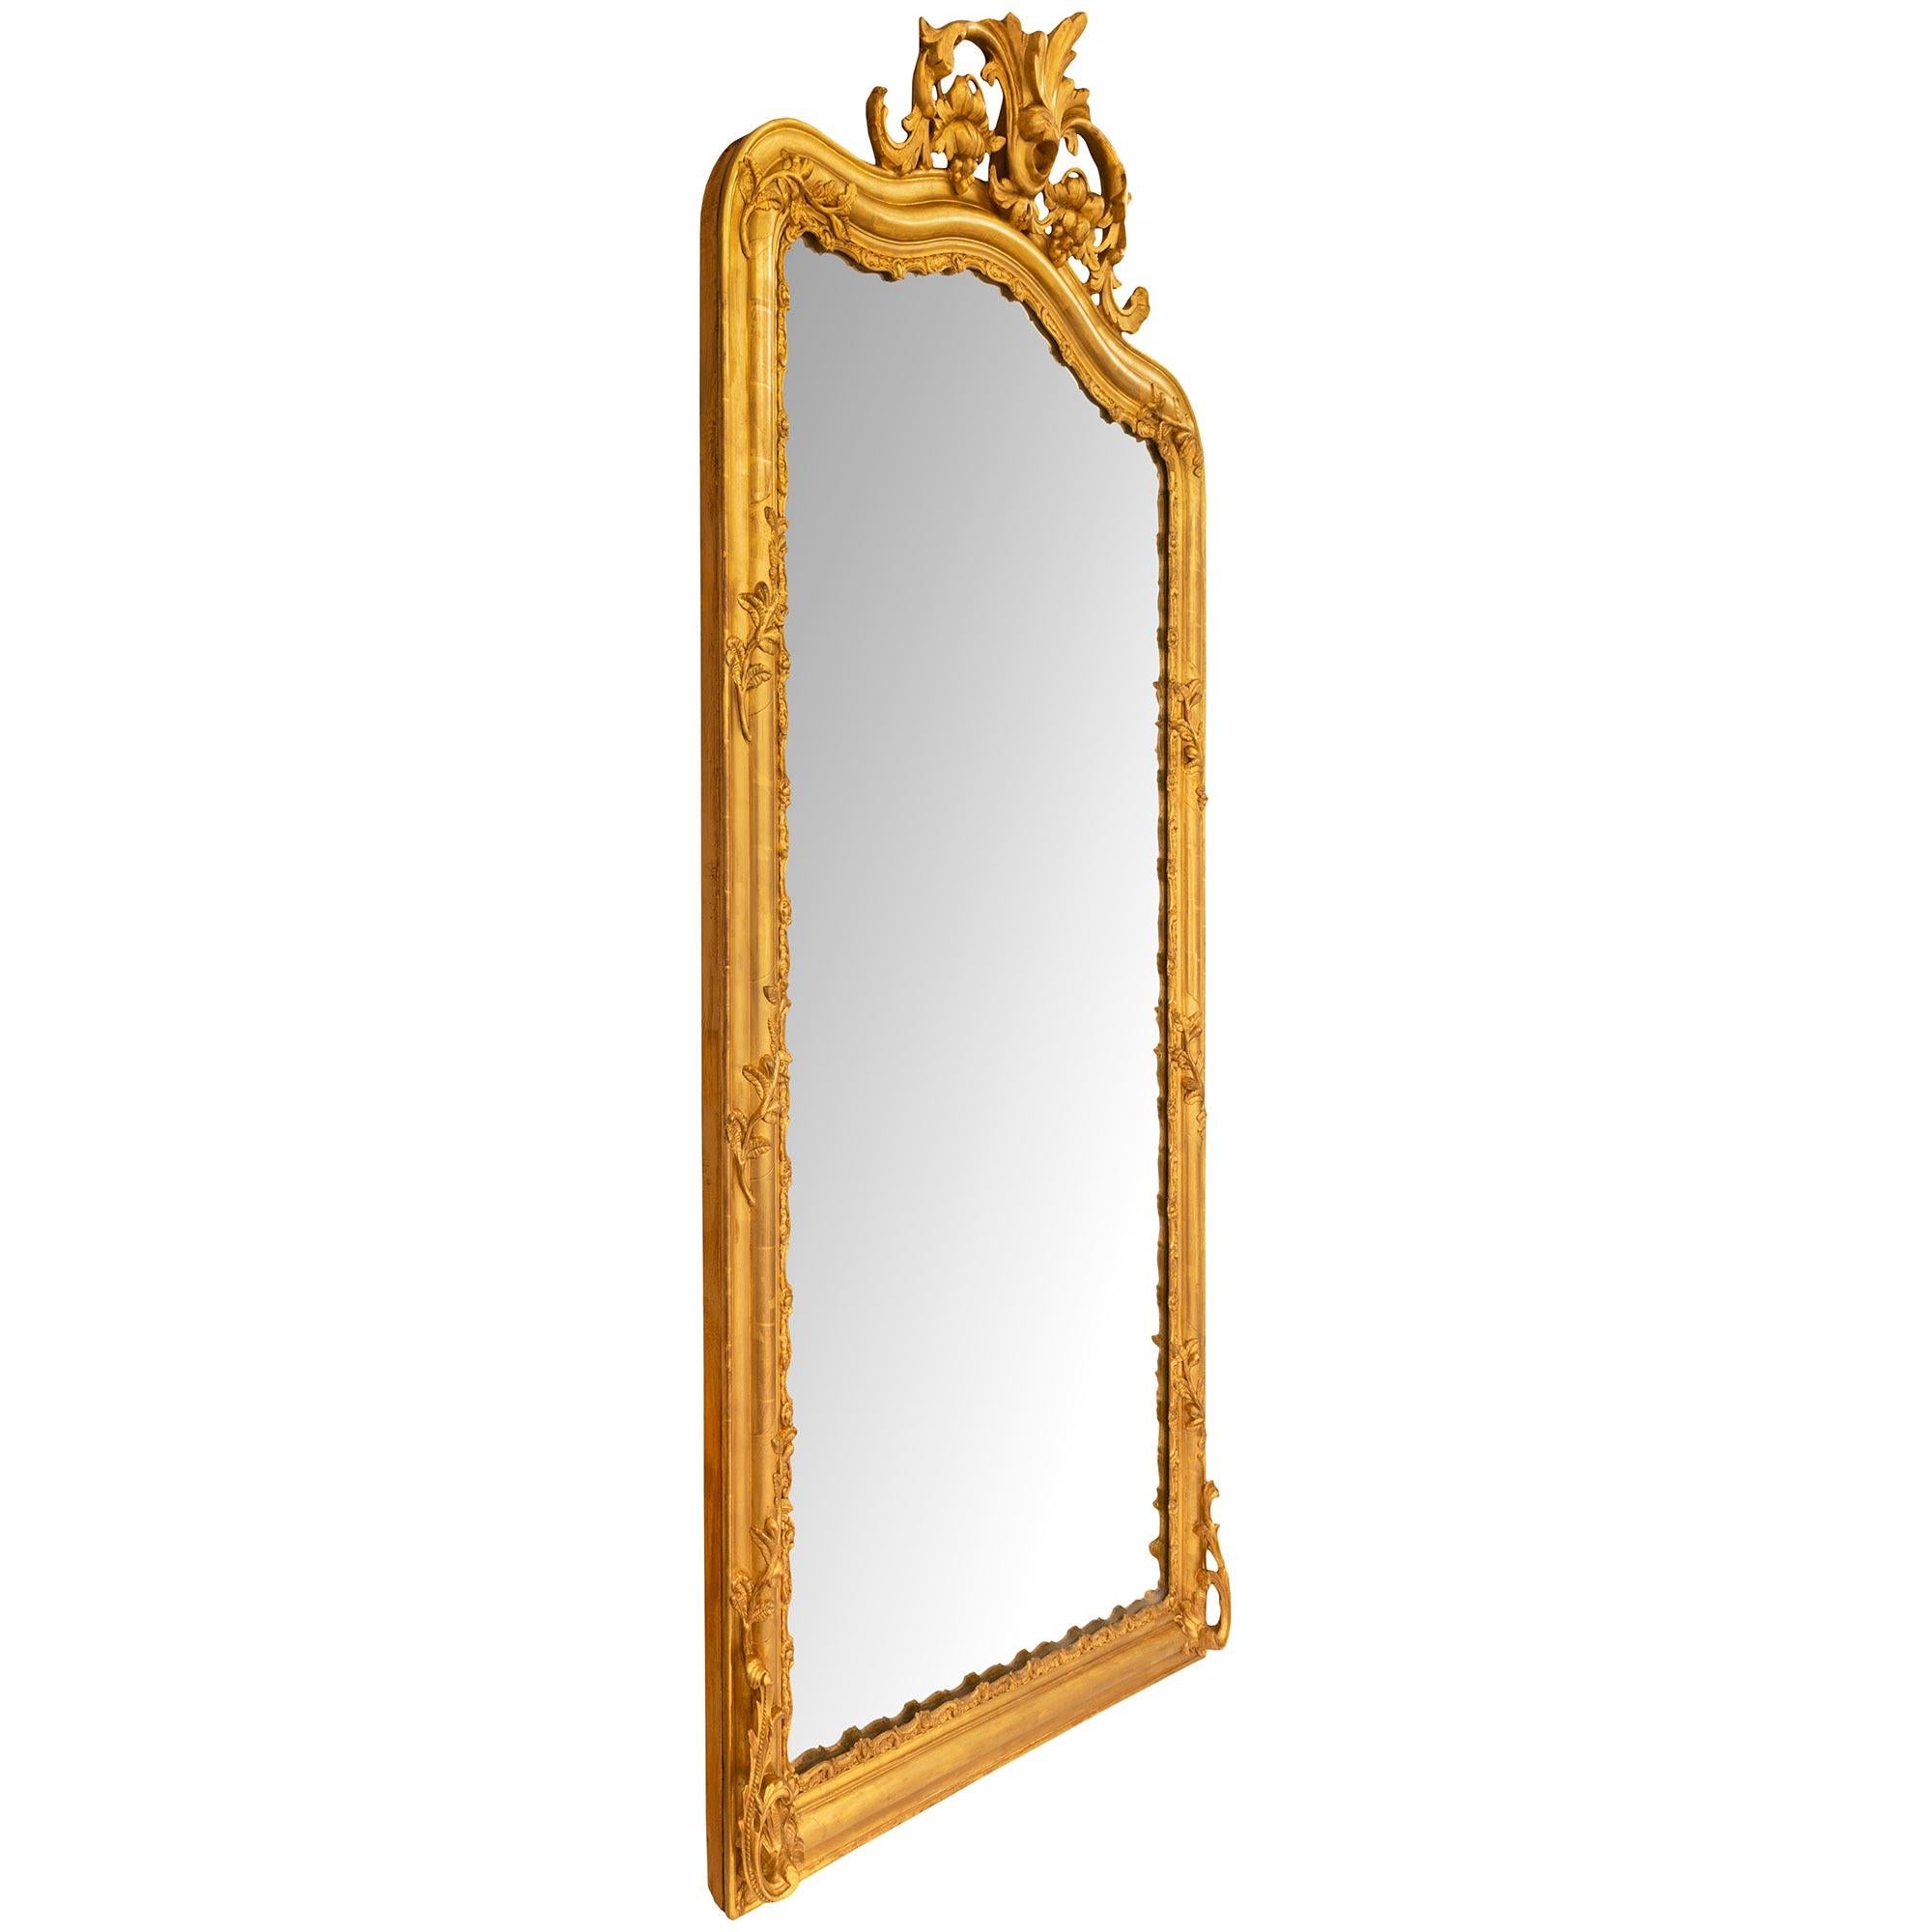 Paire impressionnante de miroirs en bois doré d'époque Louis XV, Napoléon III, 19e siècle. Cette paire de miroirs magnifiquement décorée présente des motifs de feuillage en 